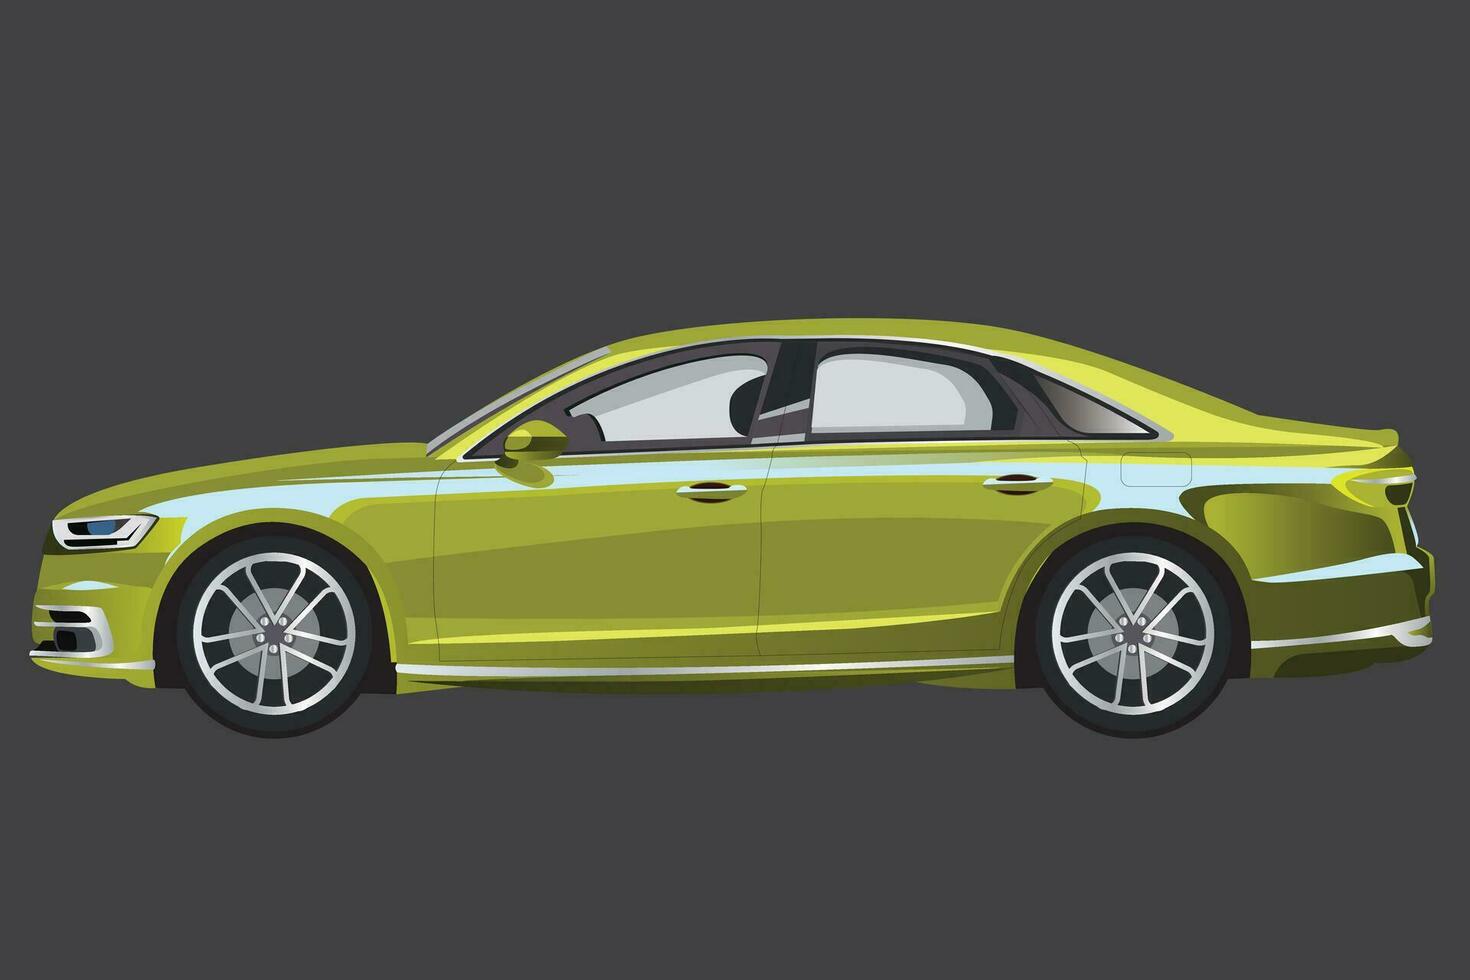 Vektor realistisch Auto beinhaltet ein metallisch Grün Limousine, diese Auto ist im Seite Aussicht mit Gradient und grau Hintergrund